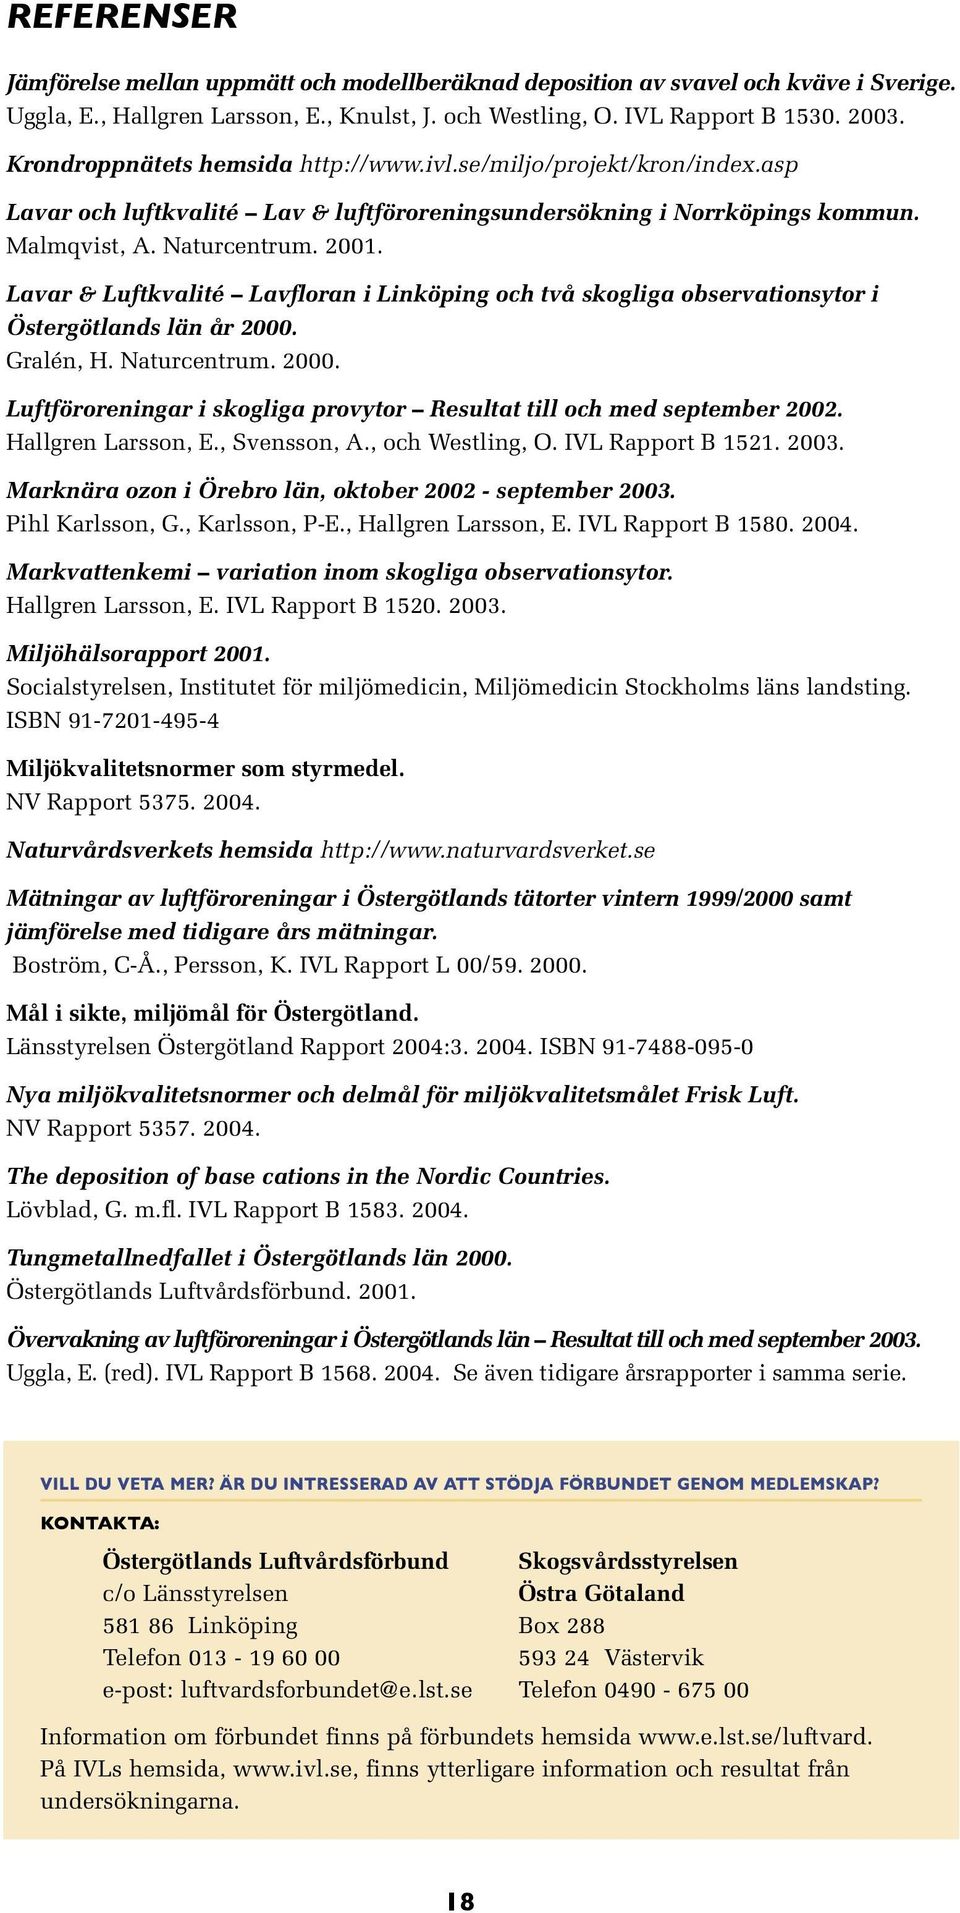 Lavar & Luftkvalité Lavfloran i Linköping och två skogliga observationsytor i Östergötlands län år 2. Gralén, H. Naturcentrum. 2. Luftföroreningar i skogliga provytor Resultat till och med september 22.